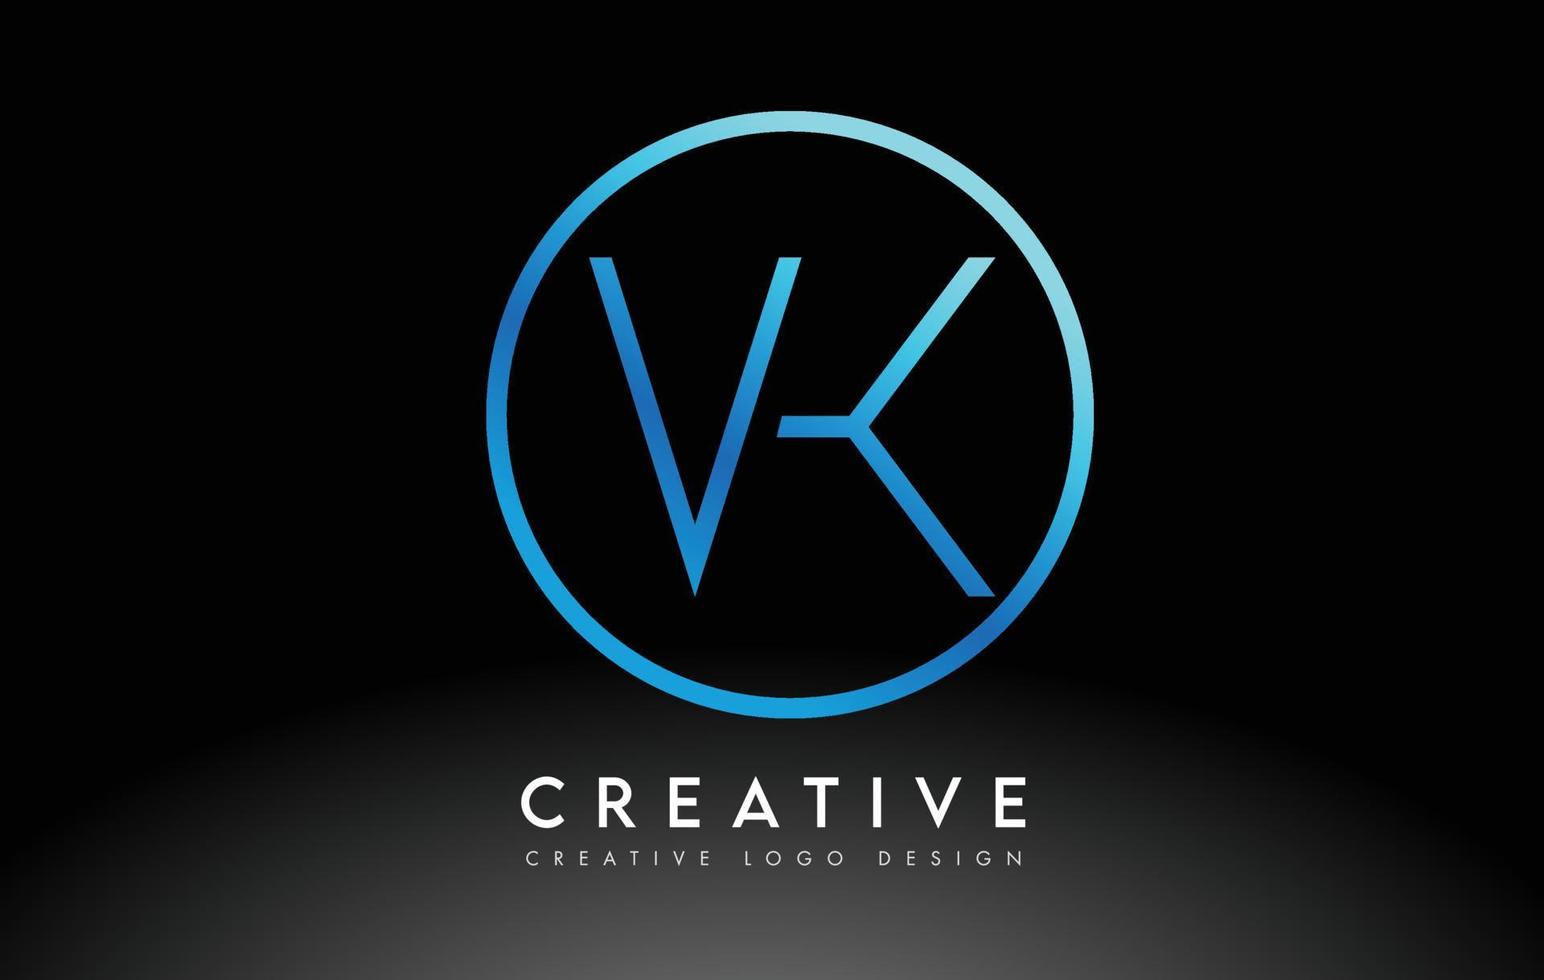 diseño de logotipo de letras vk azul neón delgado. concepto creativo simple carta limpia. vector